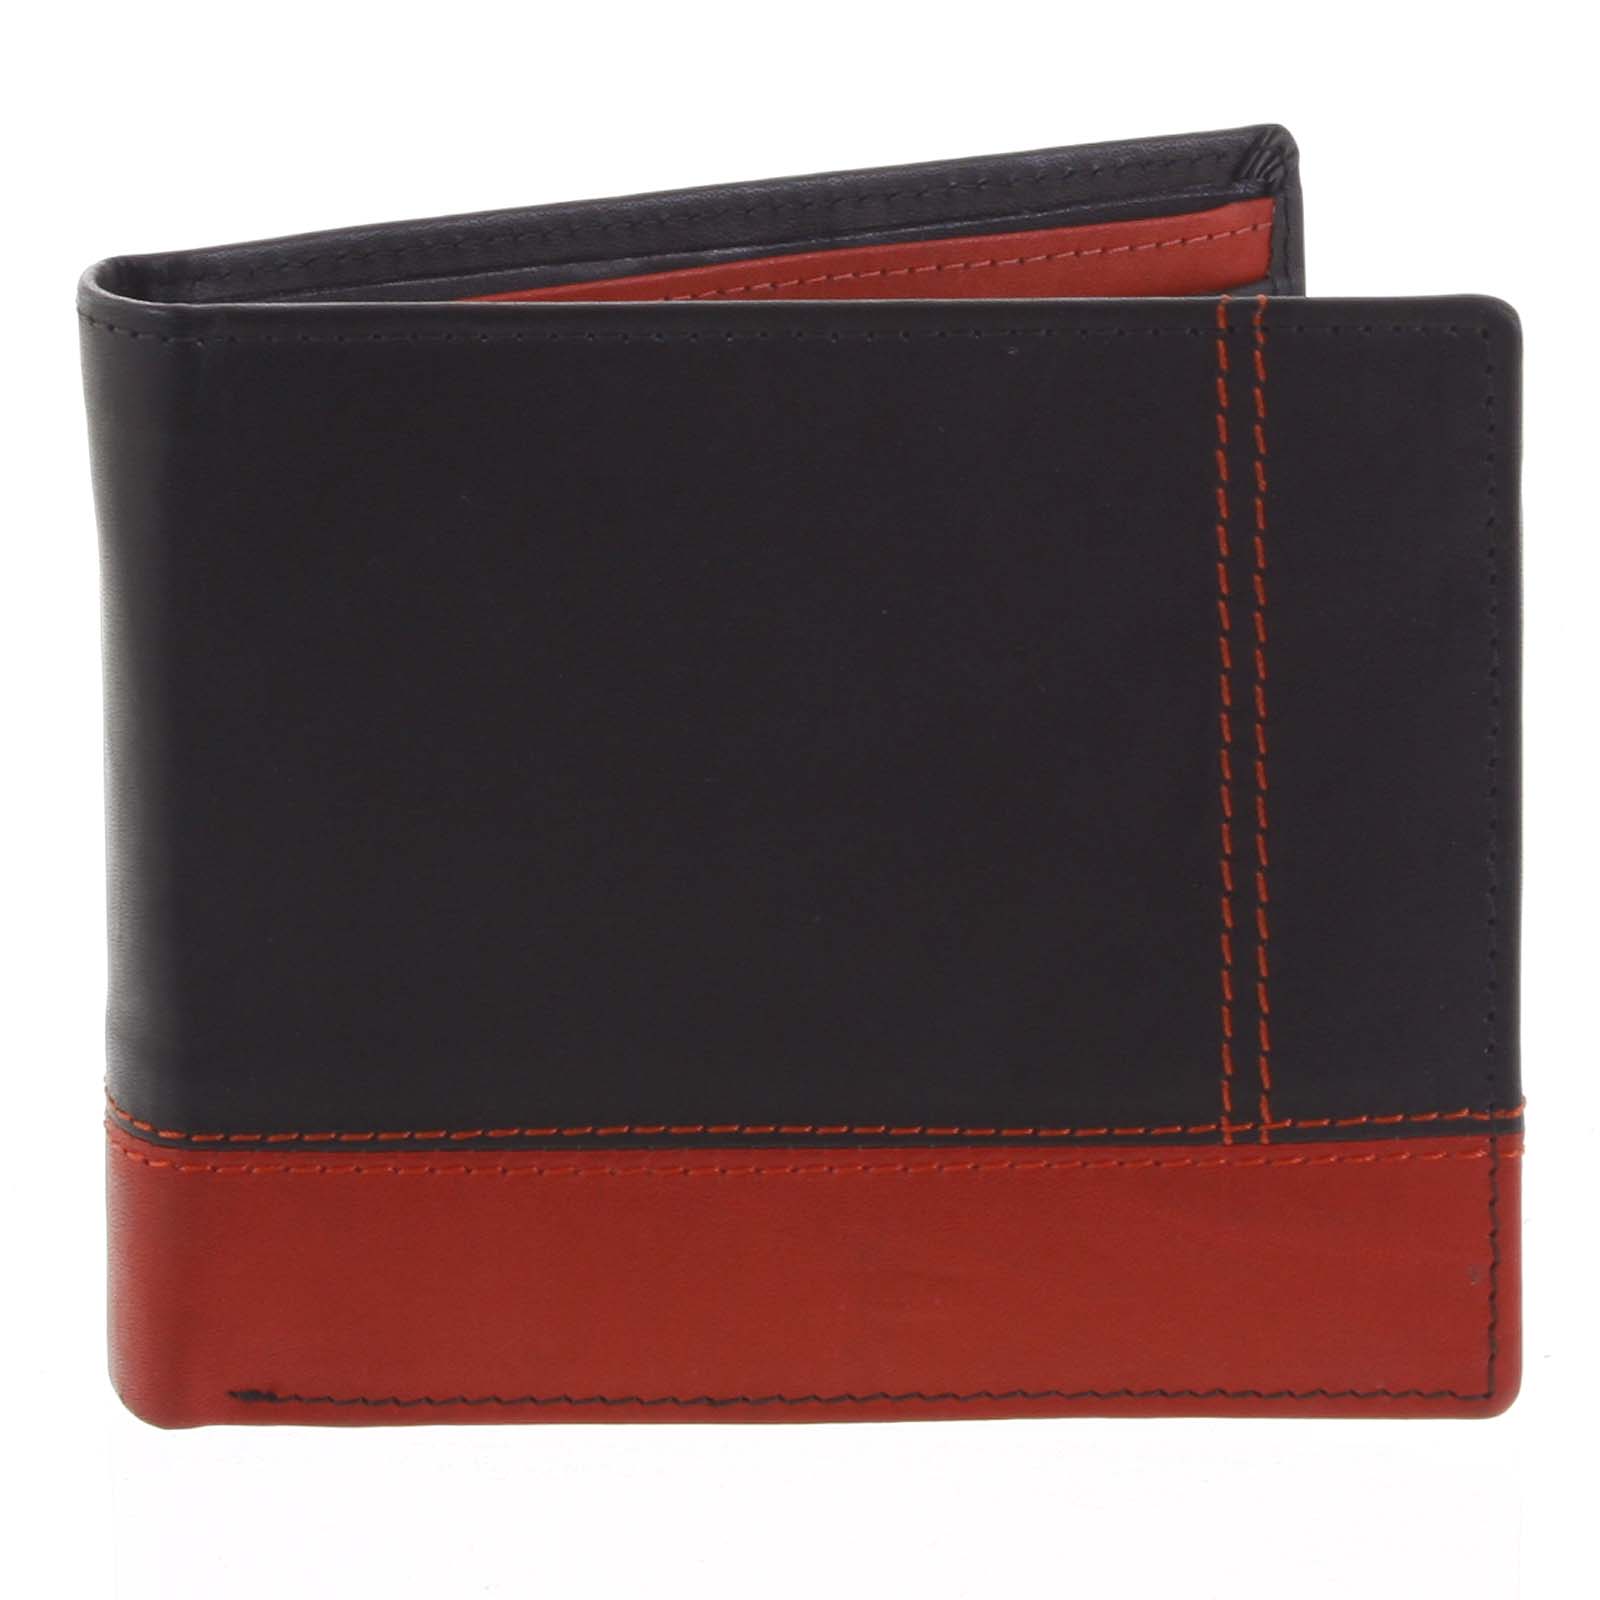 Praktická pánska voľná čierno červená peňaženka - Diviley Unibertsoa